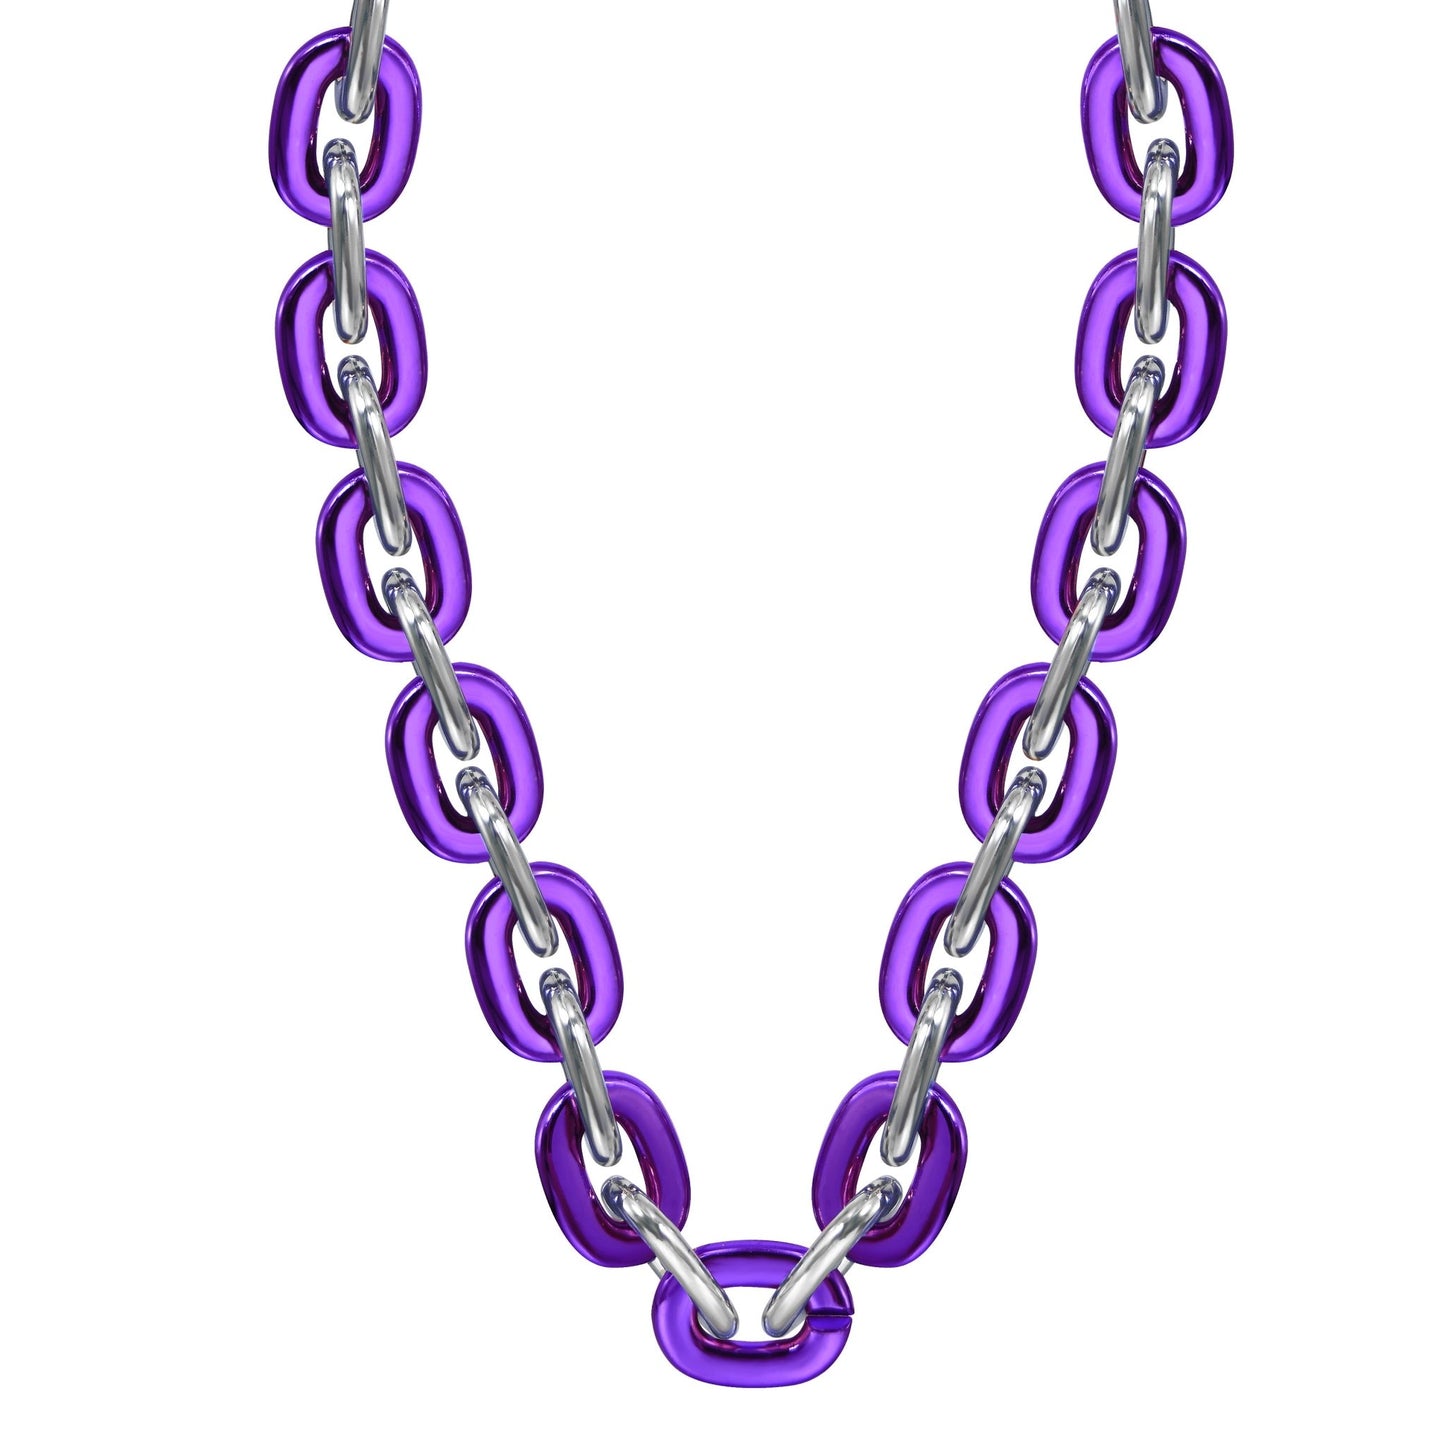 Jumbo Fan Chain Necklace - Gamedays Gear - Purple / Silver